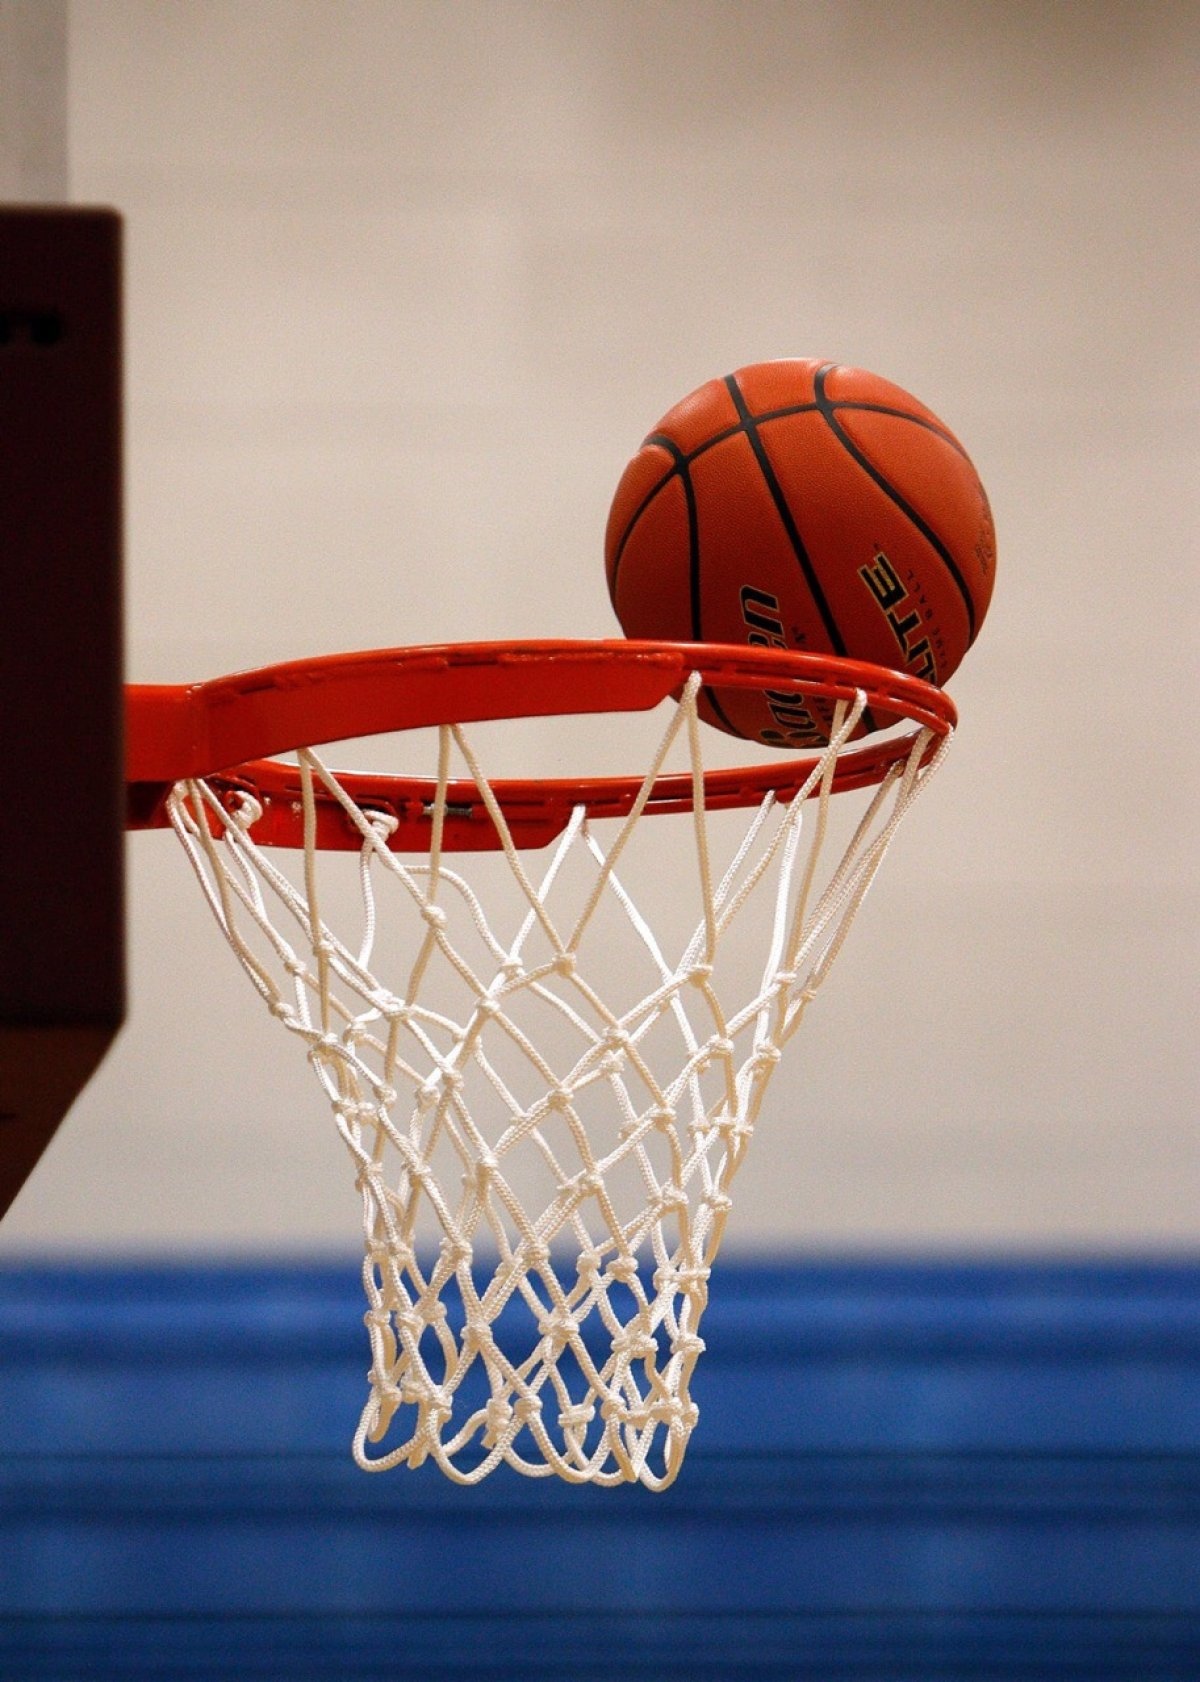 Basketball | Basketball Ball